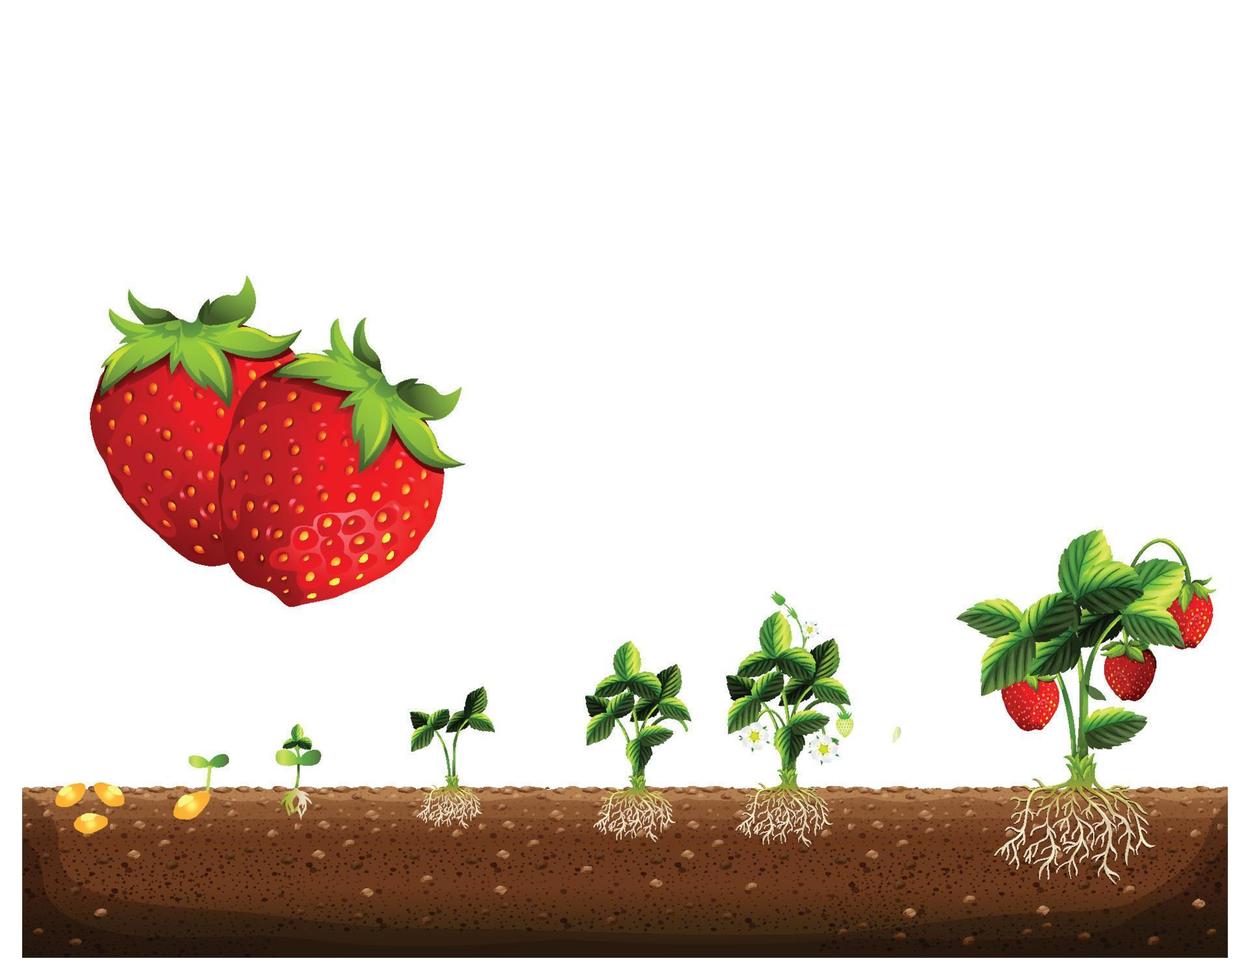 le cycle de croissance d'un fraisier. stades de croissance des fraisiers. stades de croissance des fraises, des graines, des semis, de la floraison et de la fructification aux plantes matures avec des fruits rouges mûrs. vecteur